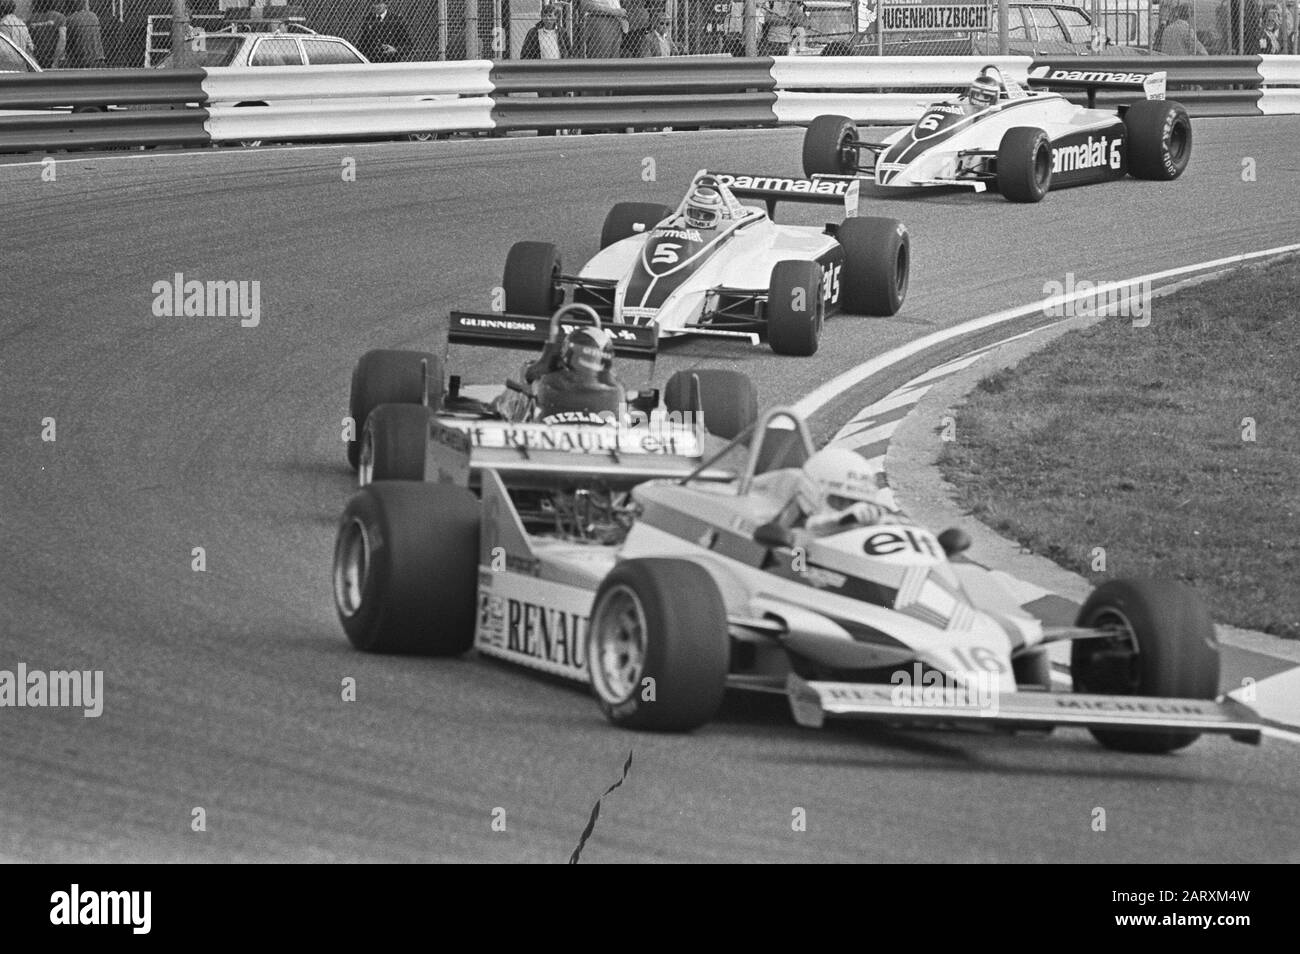 Formation sur le circuit de Zandvoort dans le cadre du Grand Prix dimanche prochain entraînement du Grand Prix Formule 1 de 1981 au circuit de Zandvoort. Direction de Renë Arnoux dans une Renault (No 16), deuxième Nelson Piquet dans un Brabham-Ford (No 5) et troisième équipier Hector Rebaque à Brabham-Ford (No 6) Date: 28 août 1981 lieu: Noord-Holland, Zandvoort mots clés: Courses automobiles, pistes, voitures de course Nom personnel: Arnoux, René, Piquet, Nelson, Rebaque, Hector Banque D'Images